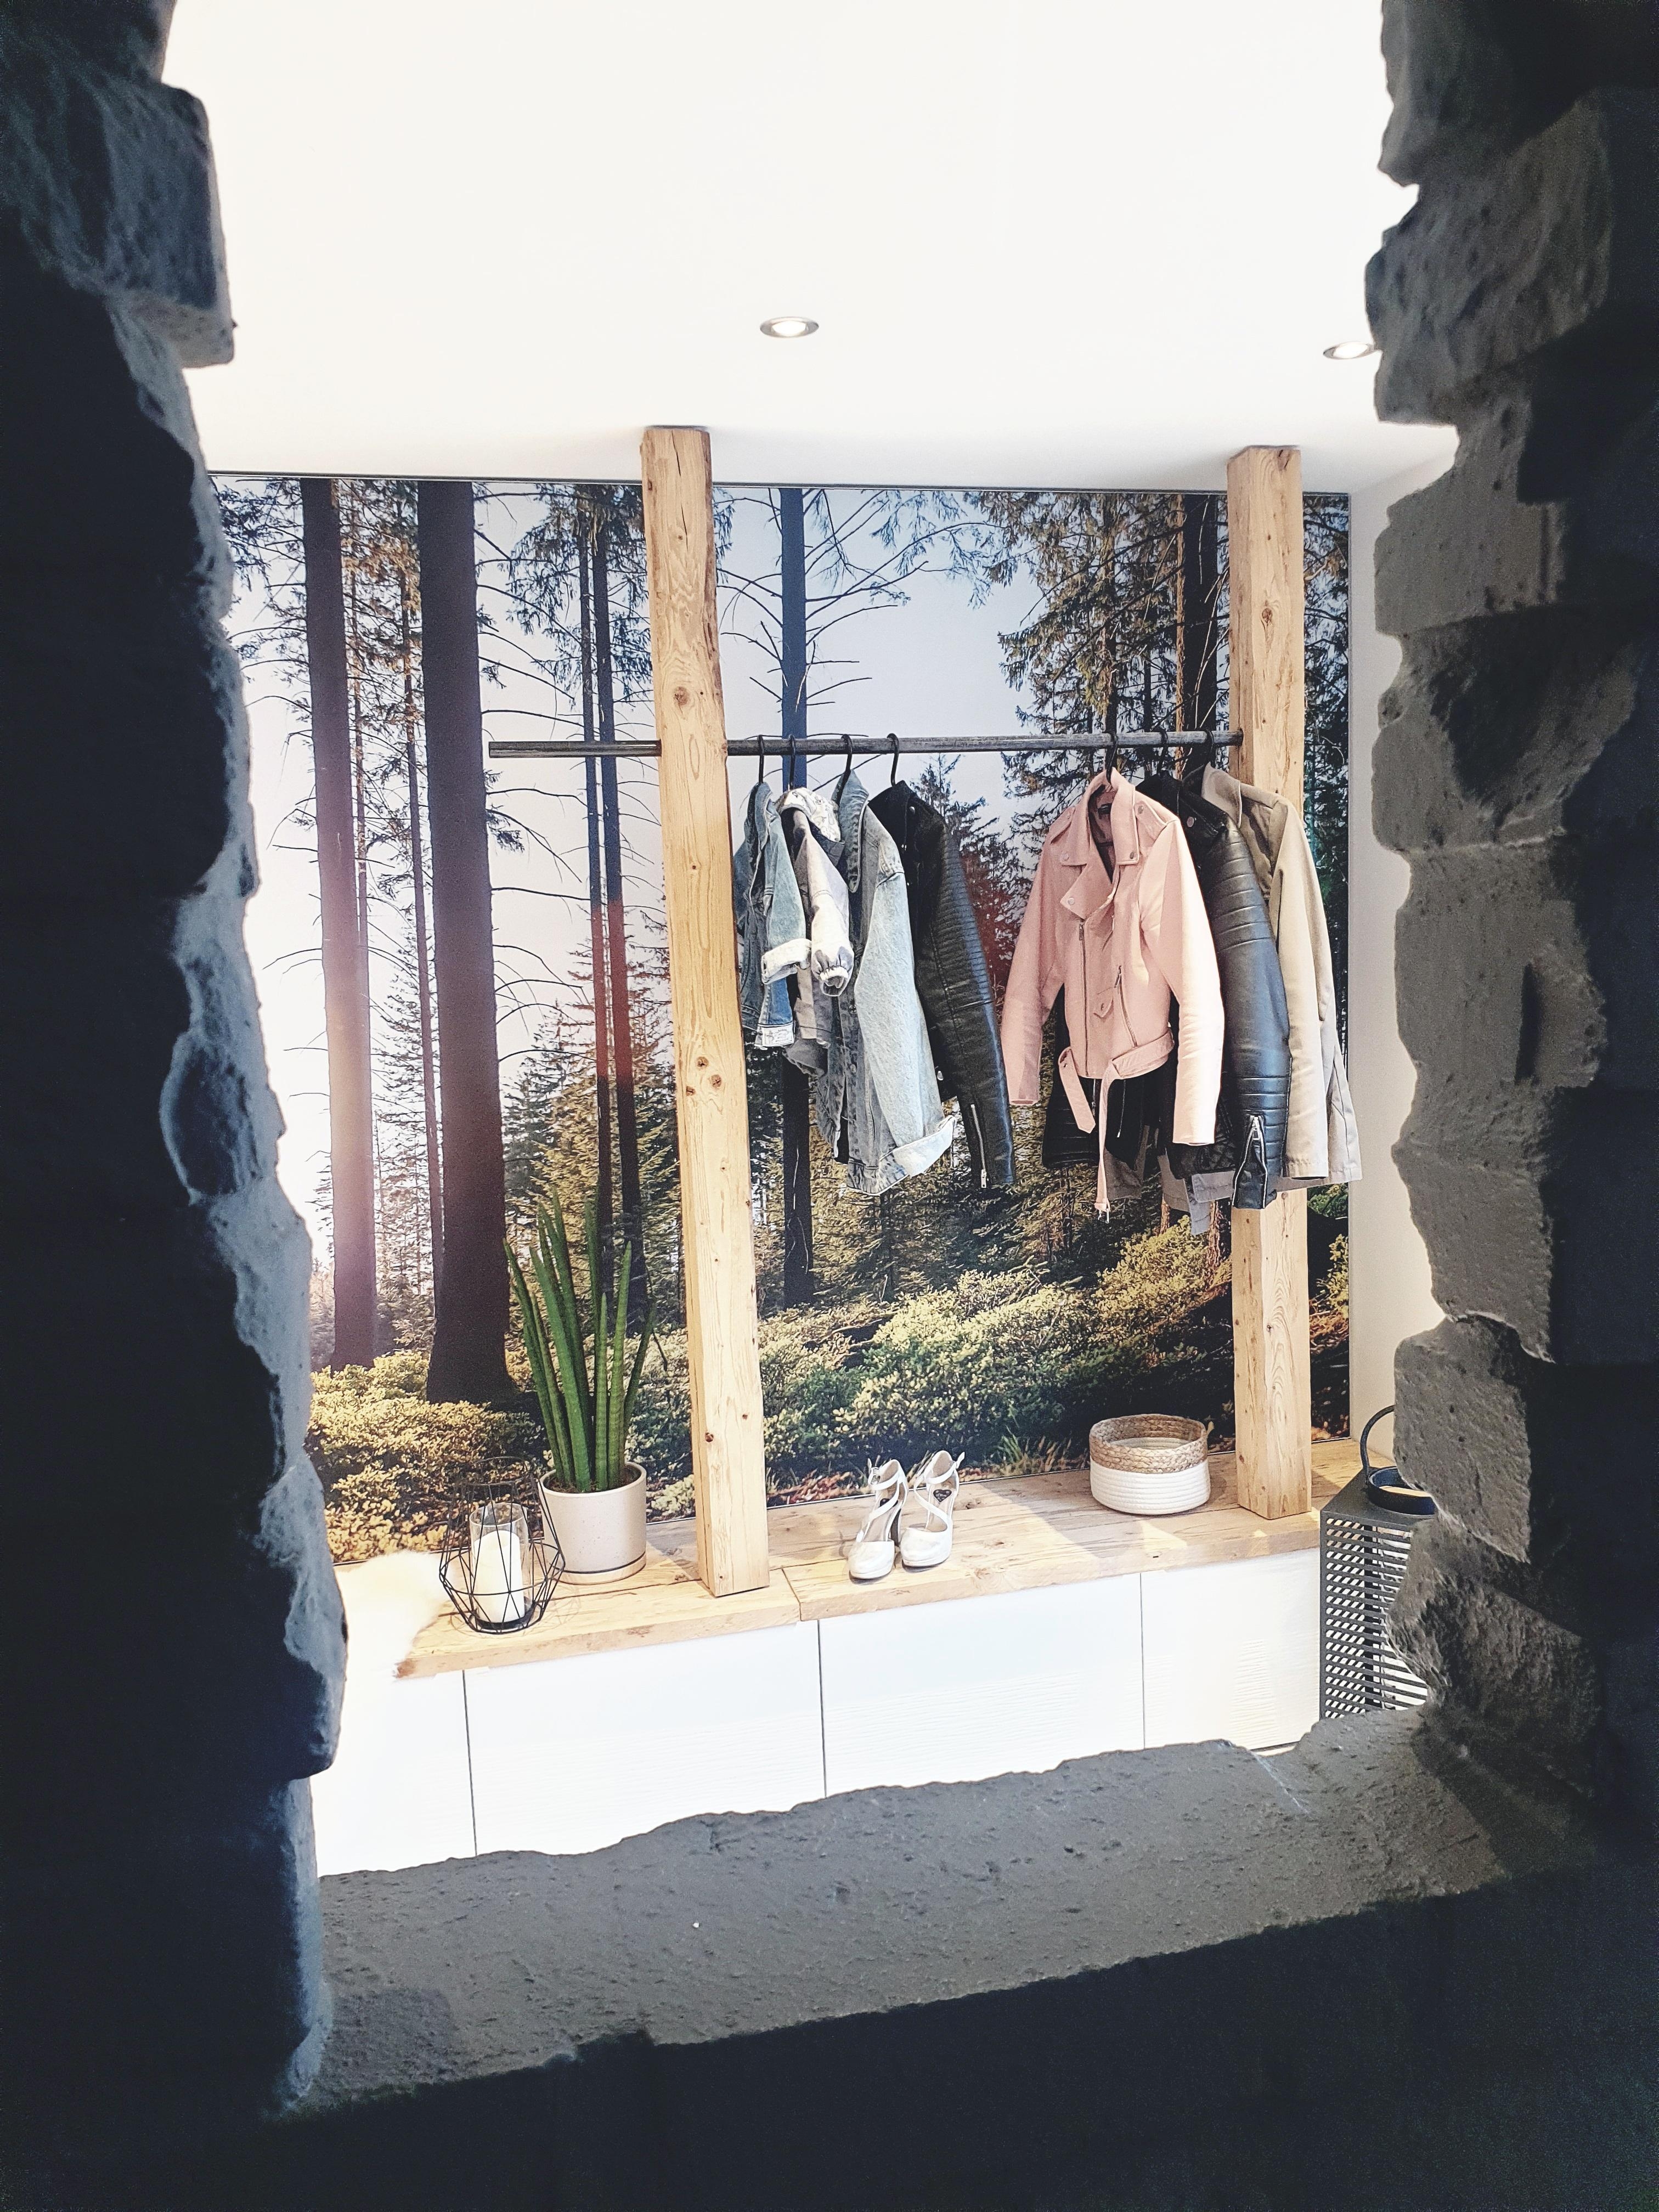 Unsere Garderobe 
#interior #garderobe 